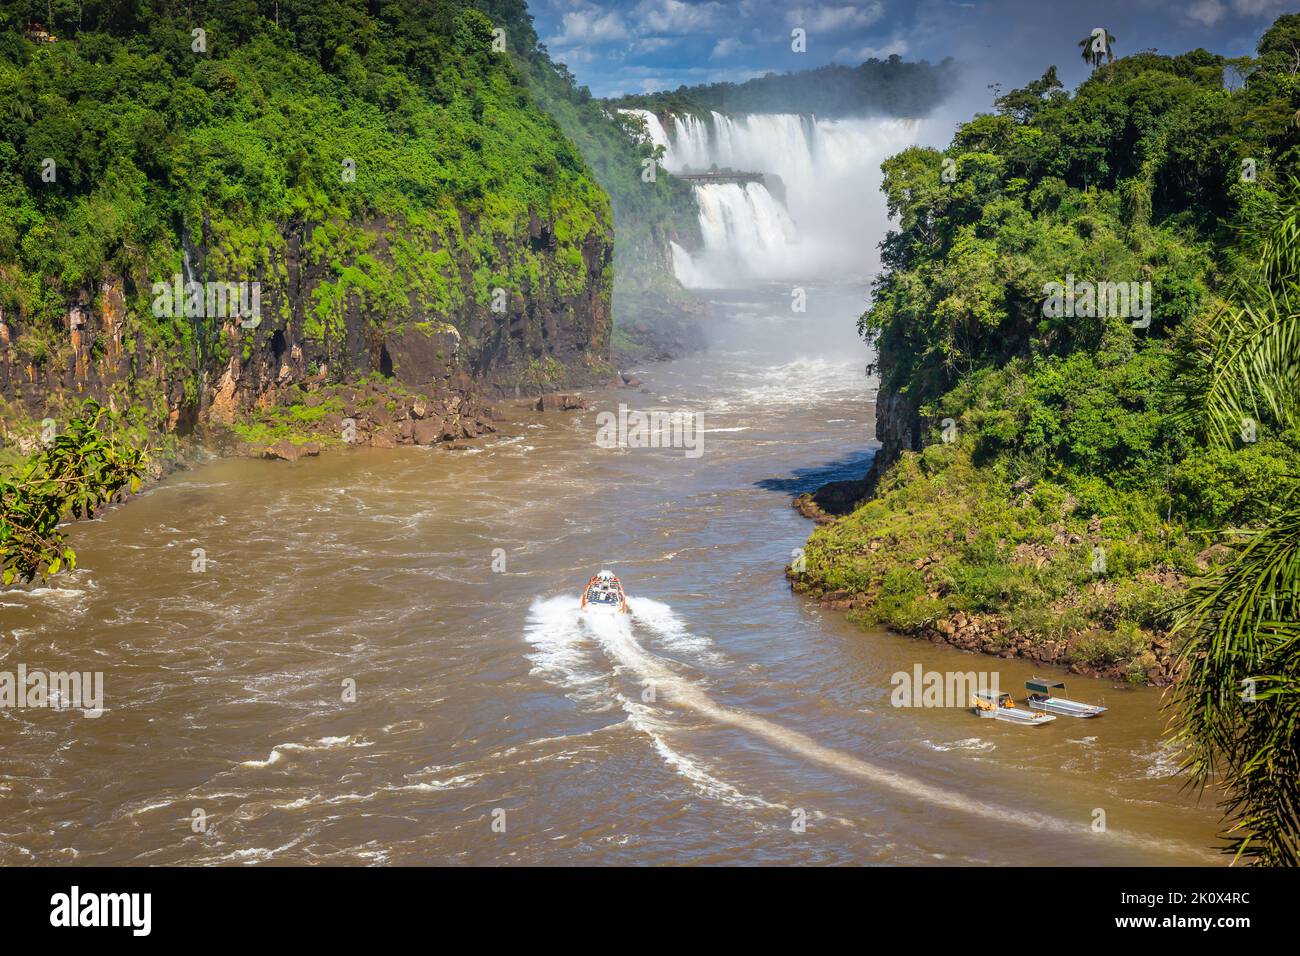 Motoscafo sul fiume Iguazu alle cascate di Iguazu, vista dal lato argentino Foto Stock